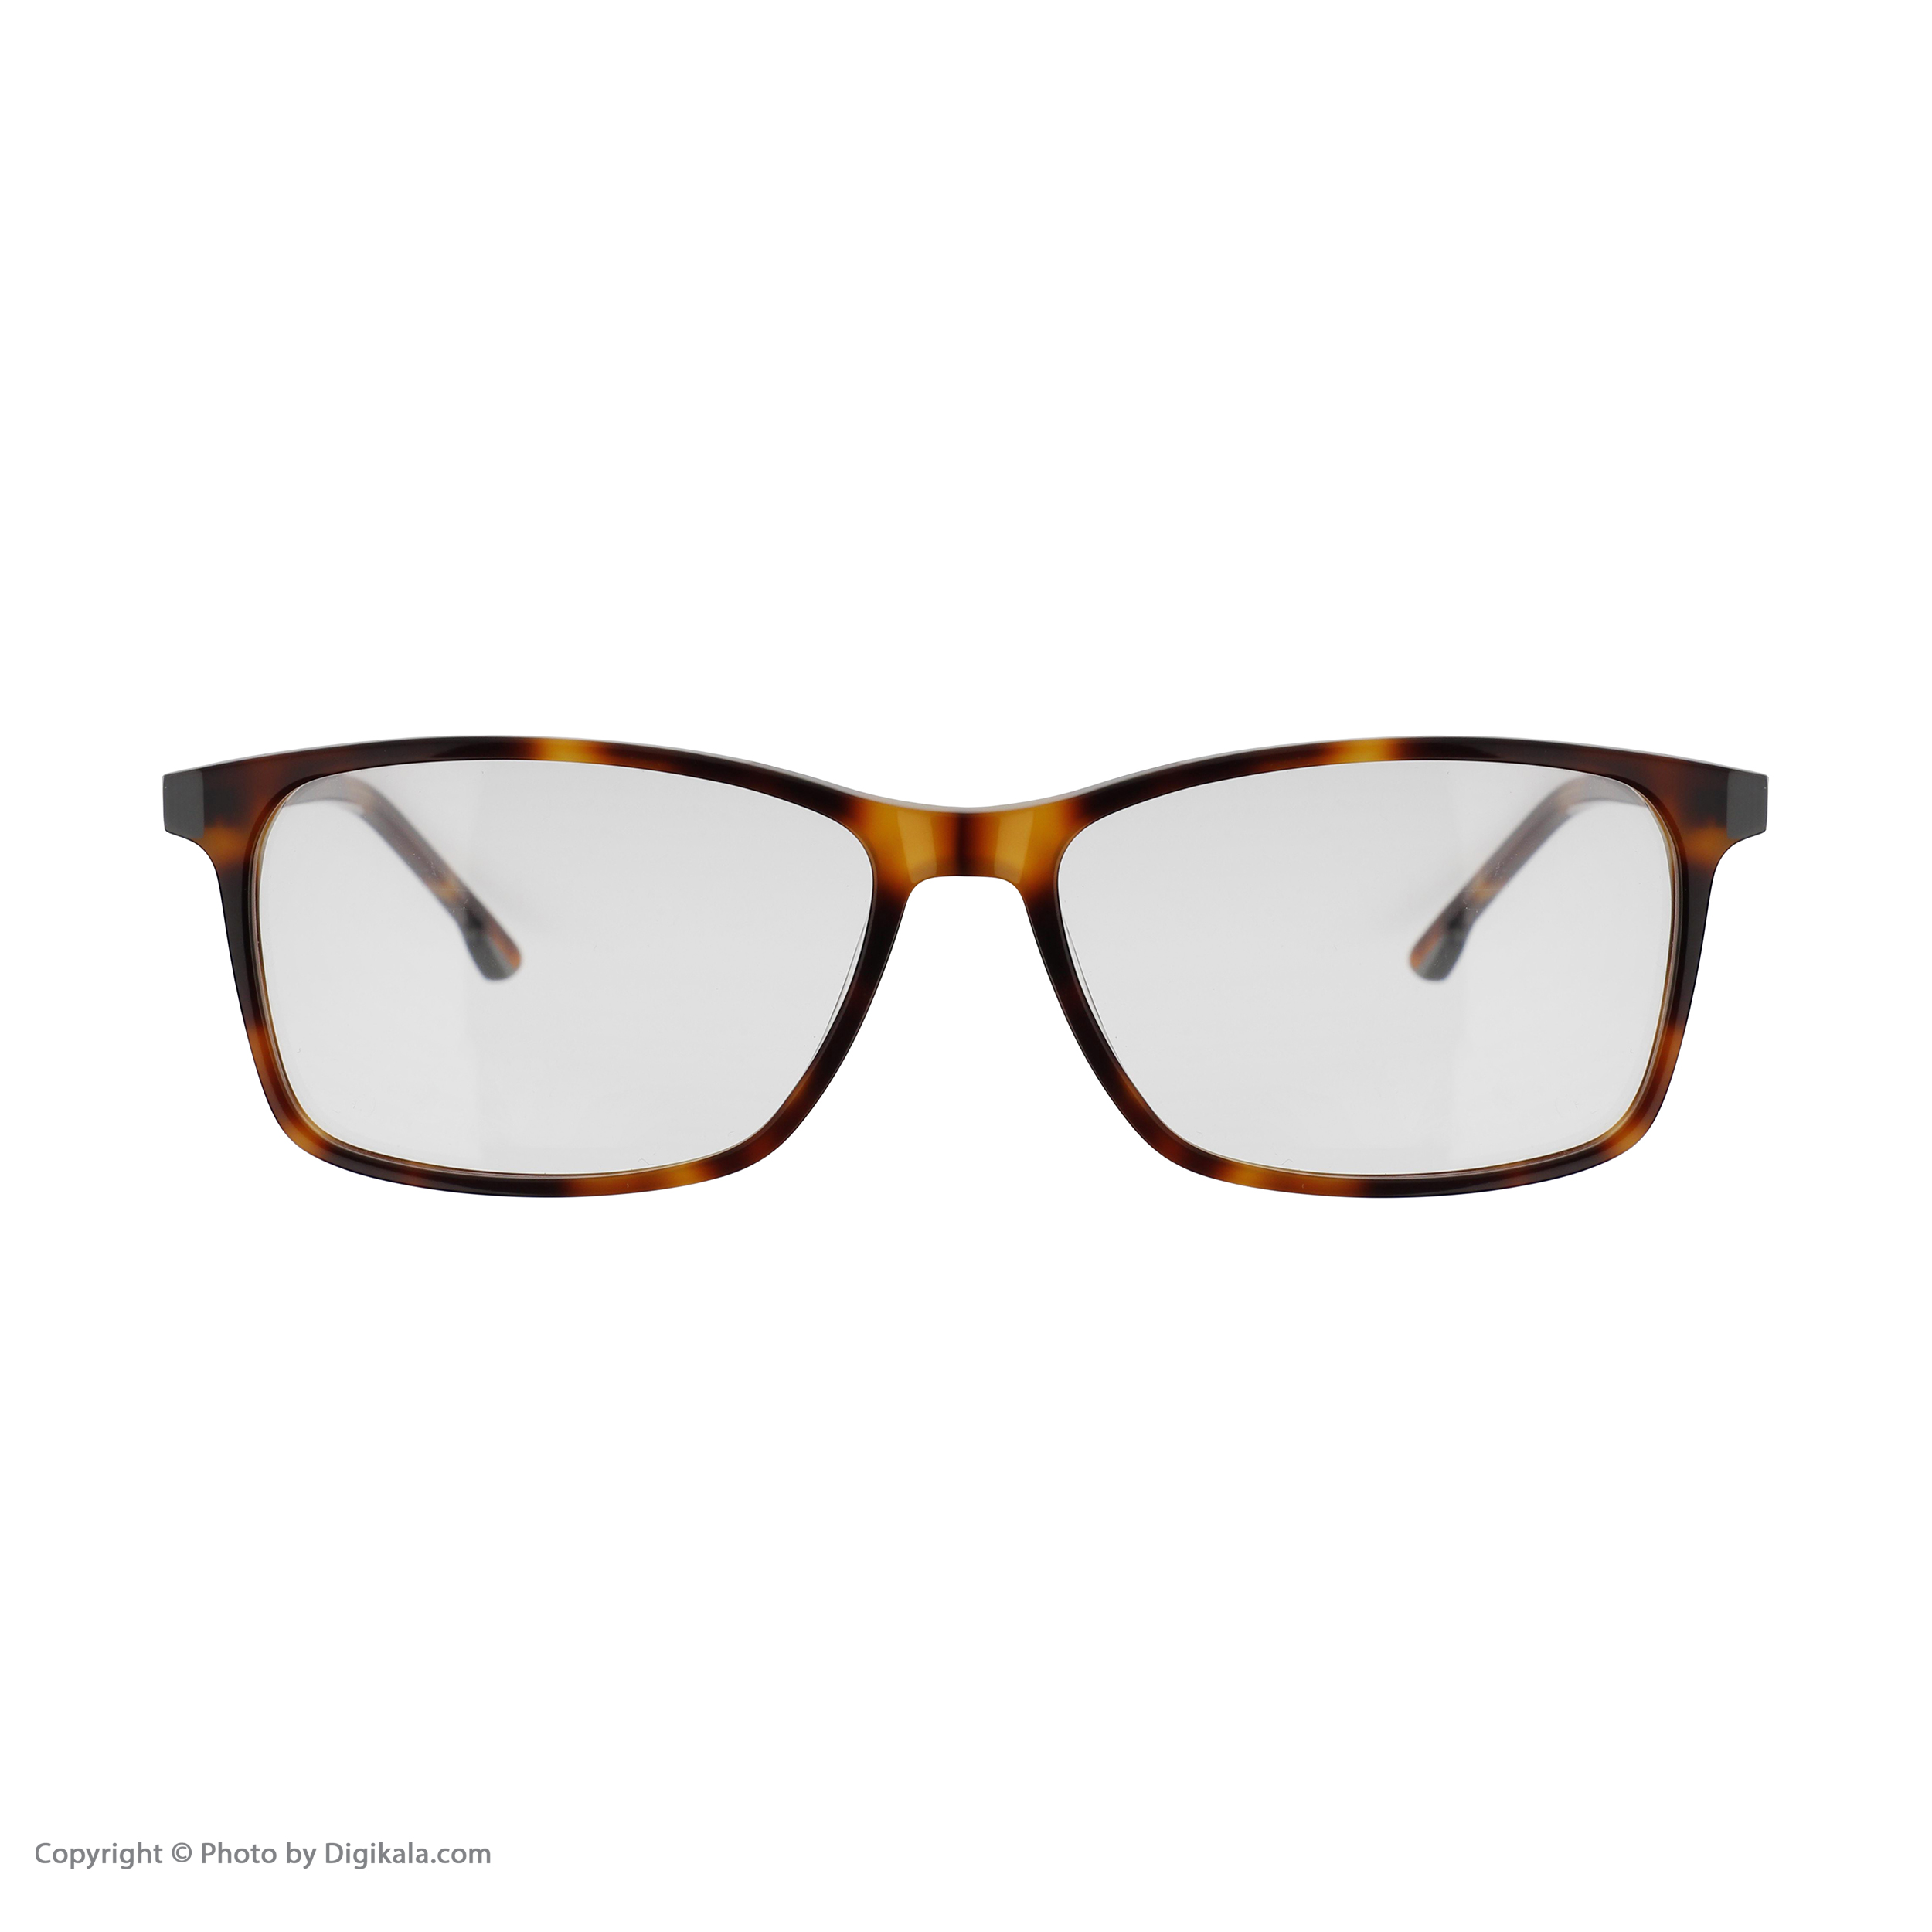 فریم عینک طبی تام تیلور مدل 60463-414 -  - 6